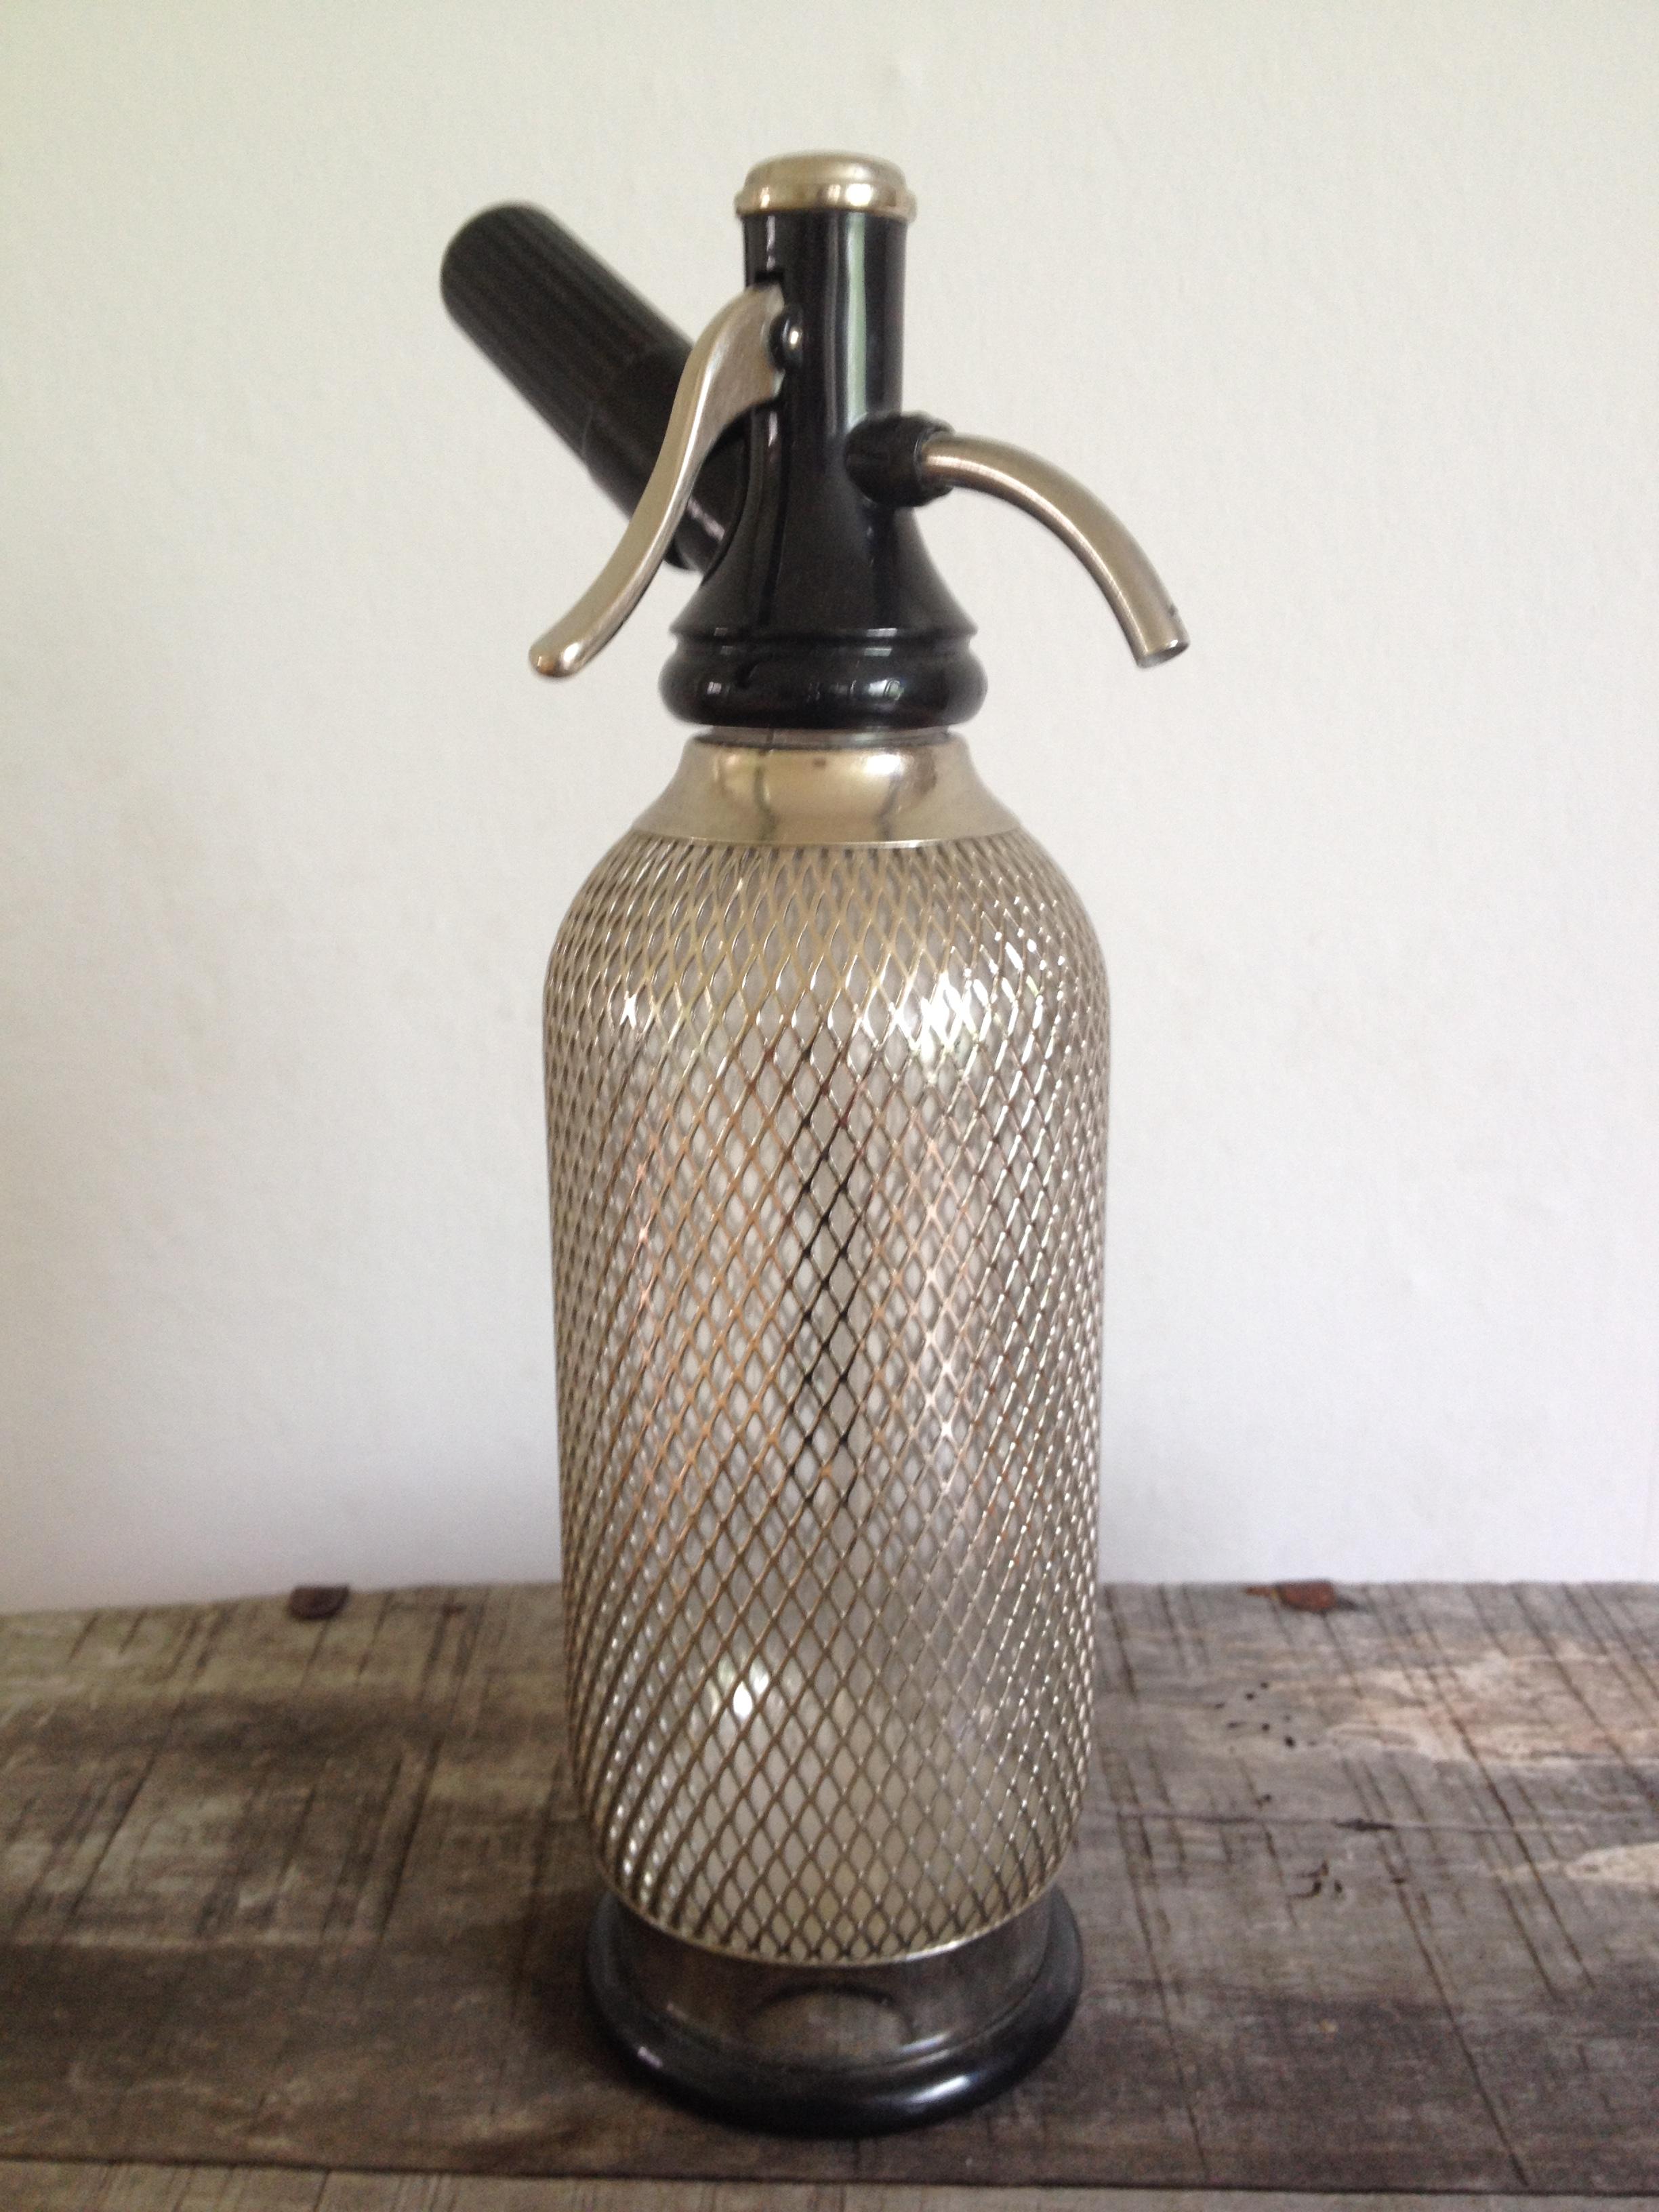 Klassische Sodawasser-Flasche im coolen Look, Glas mit Metallgitter umfangen, h 32 cm, ∅ 9 cm